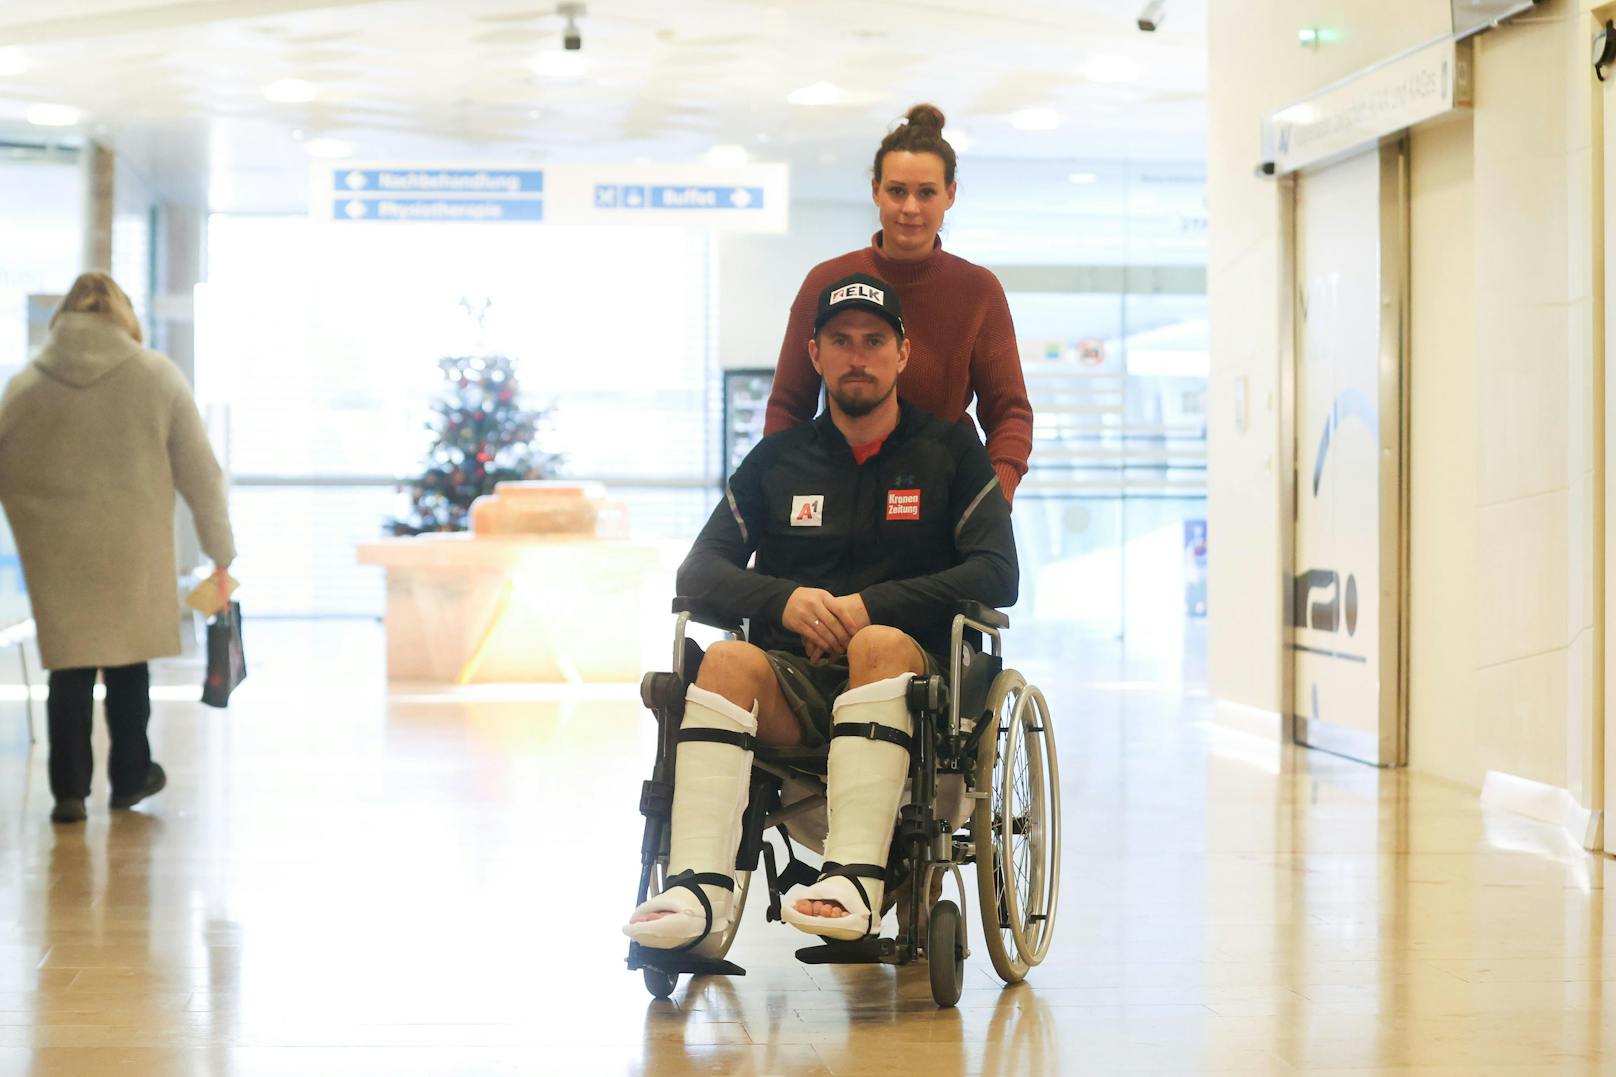 ÖSV-Star Franz: "Ich sitze noch immer im Rollstuhl"